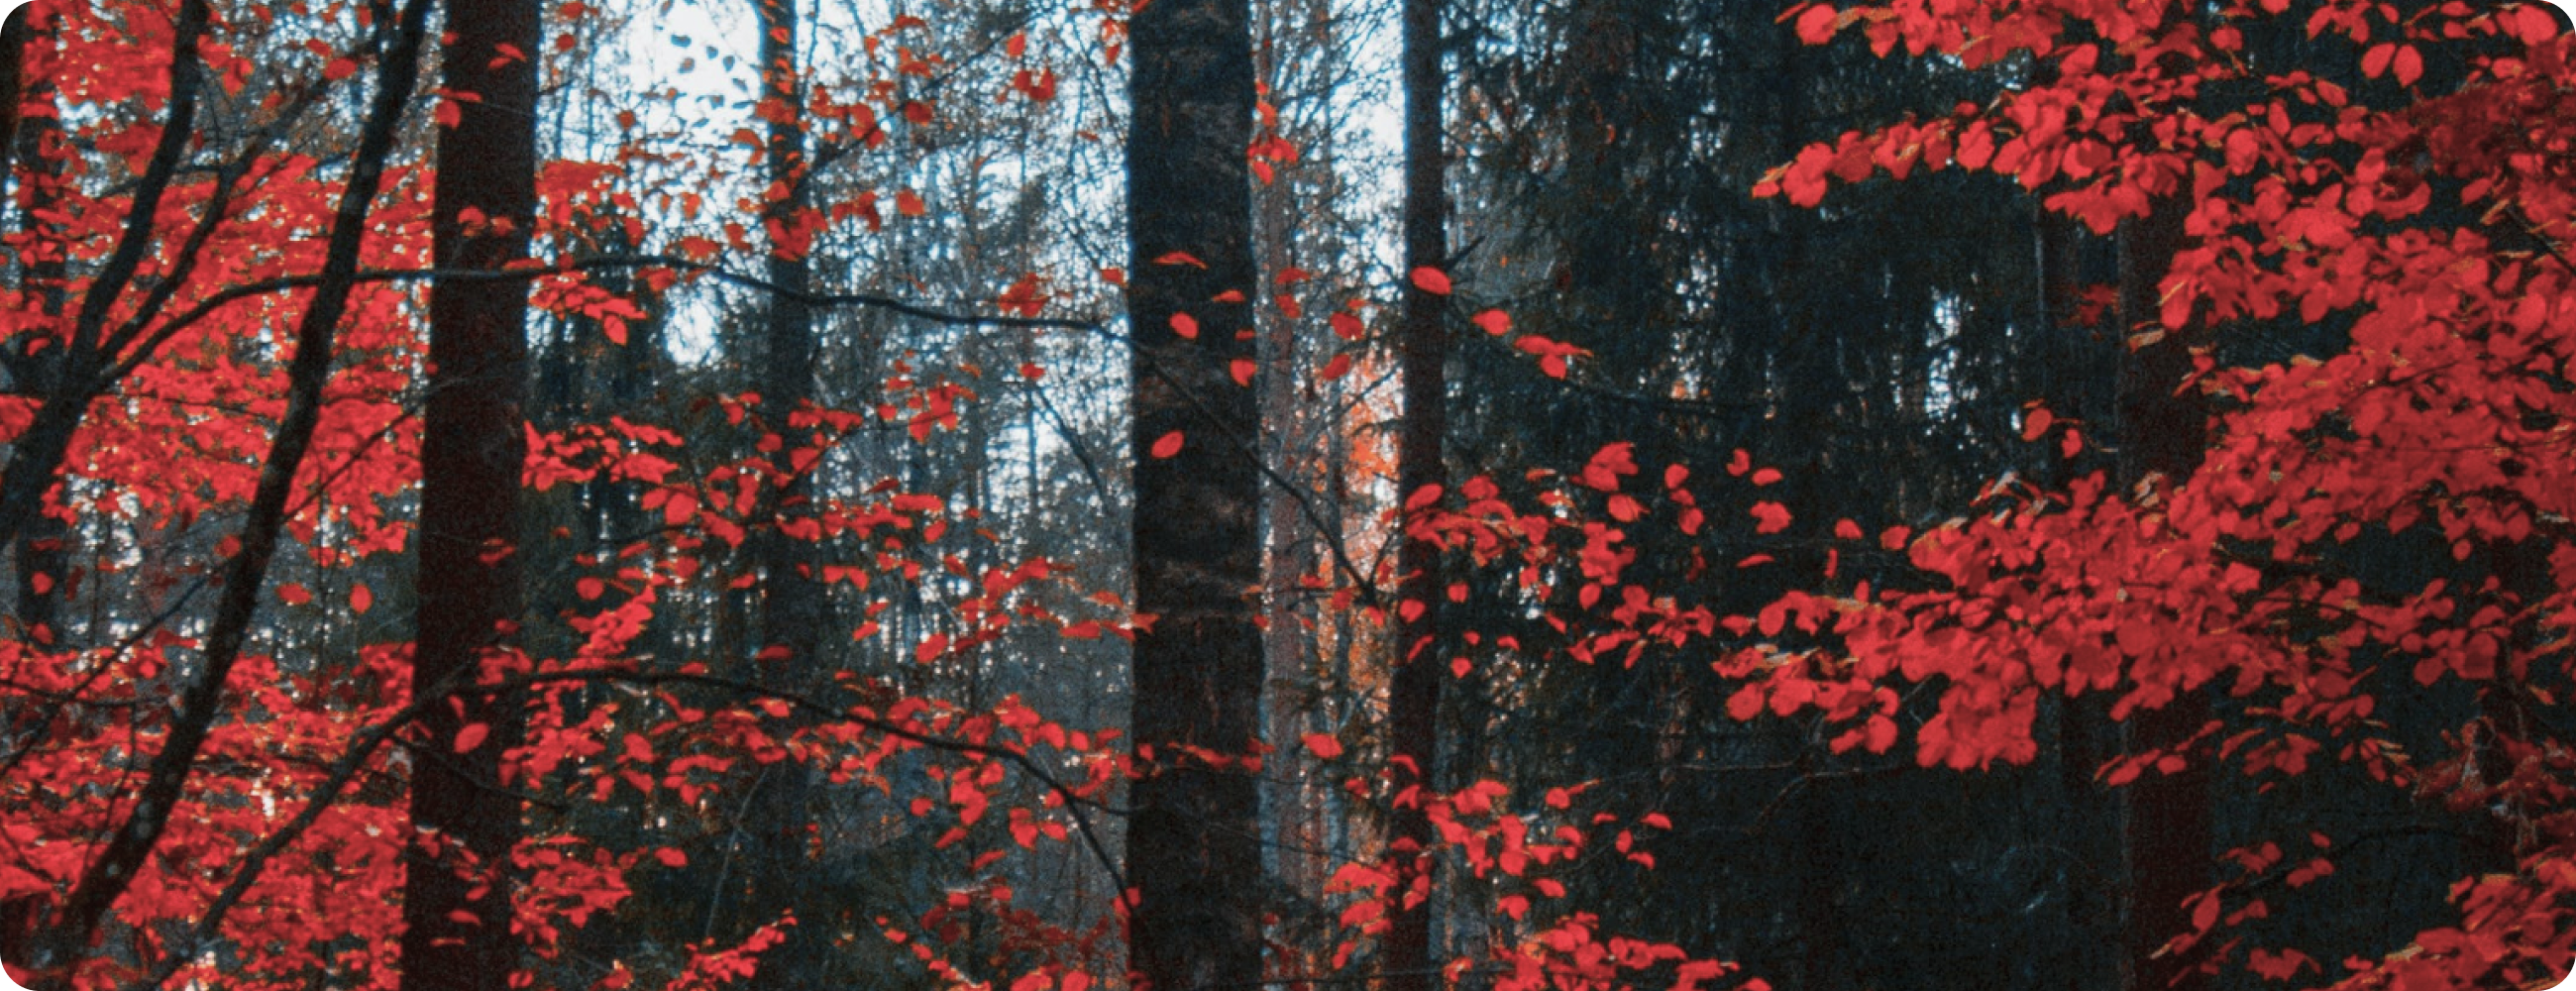 深い森の中で赤い葉をつけた木々が秋の色彩を際立たせている